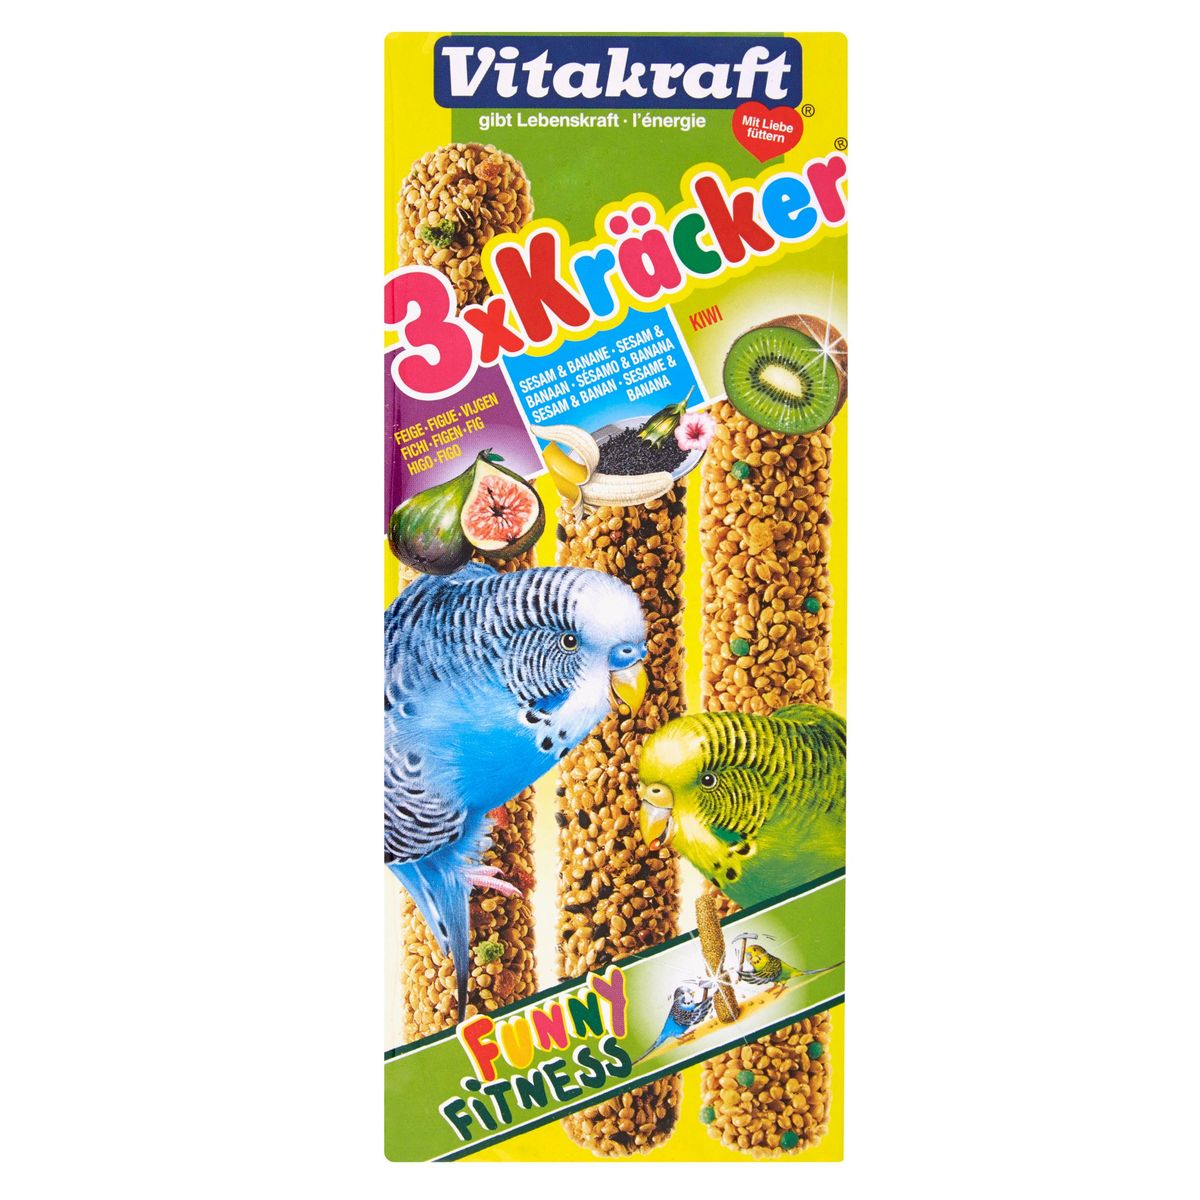 Vitakraft 3x Crackers Vijgen, Sesam & banaan, Kiwi voor parkieten 90 g